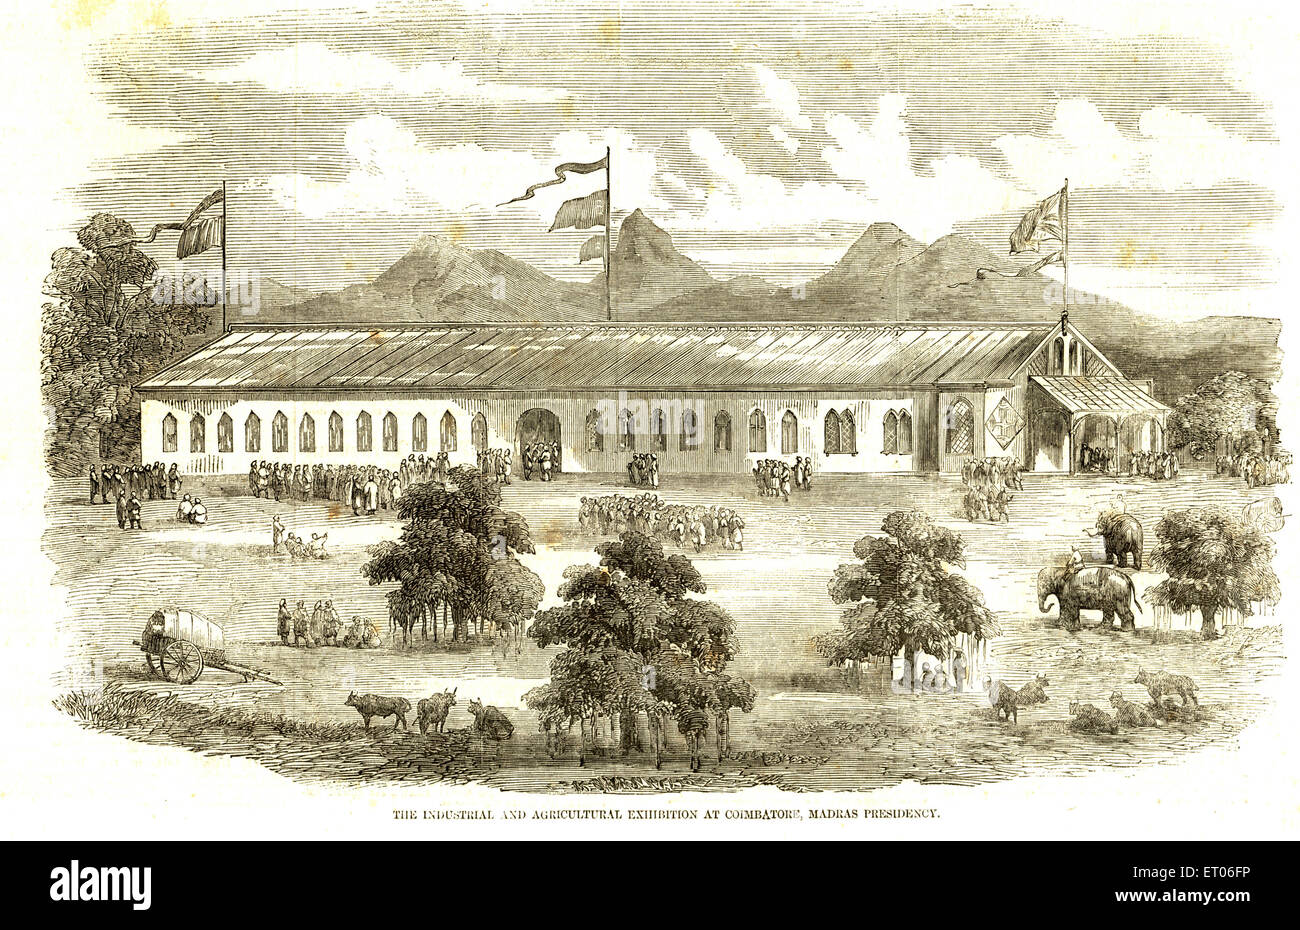 Vecchia mostra 1900s industriale e agricola , Coimbatore , Presidenza Madras , Tamil Nadu , India Foto Stock